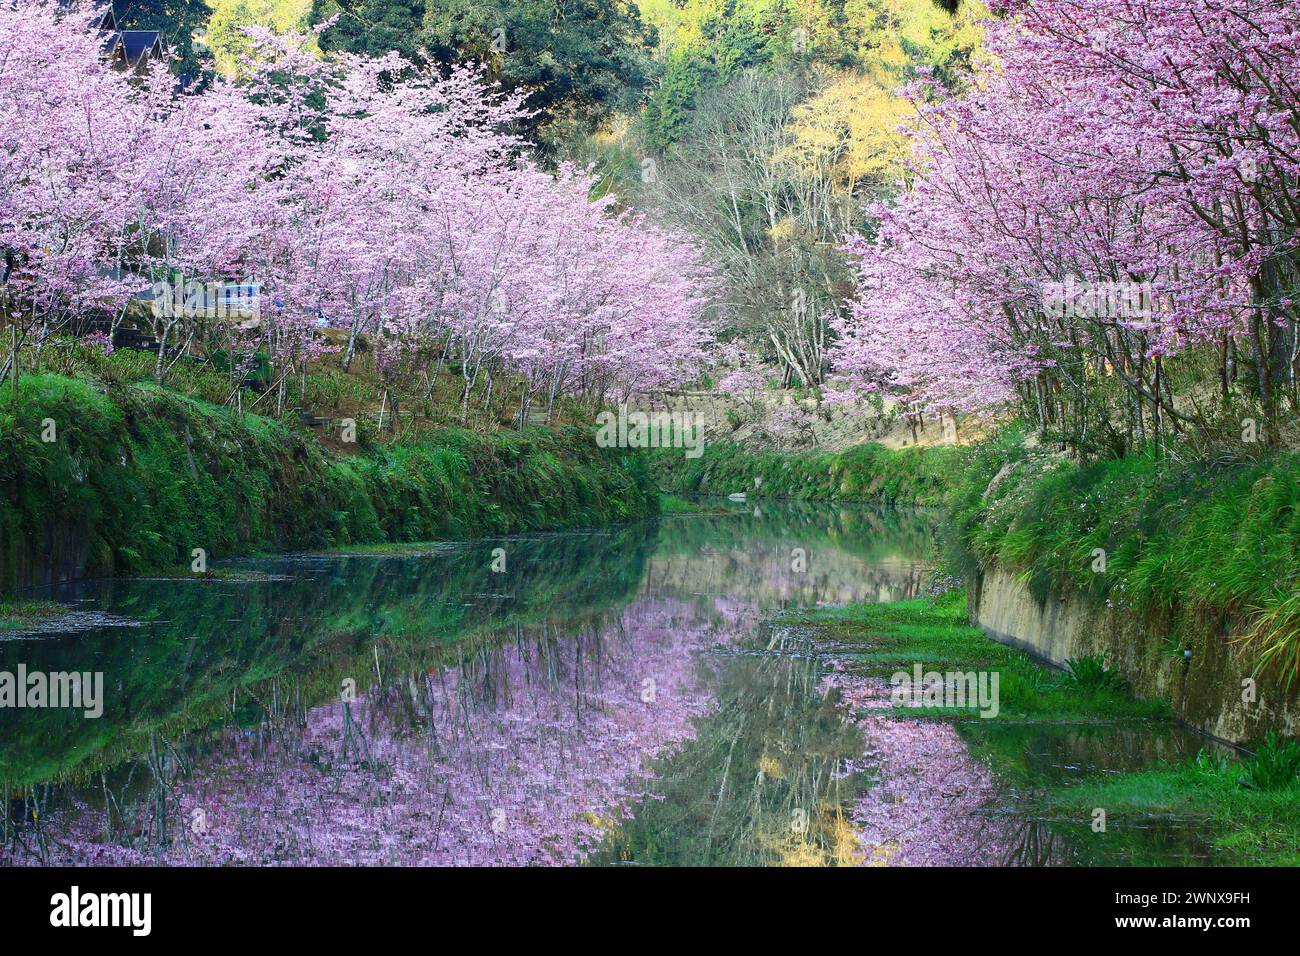 Scenario di alberi di ciliegio fioriti con fiume e riflessi, vista dei fiori di ciliegio rosa che fioriscono accanto al fiume Foto Stock